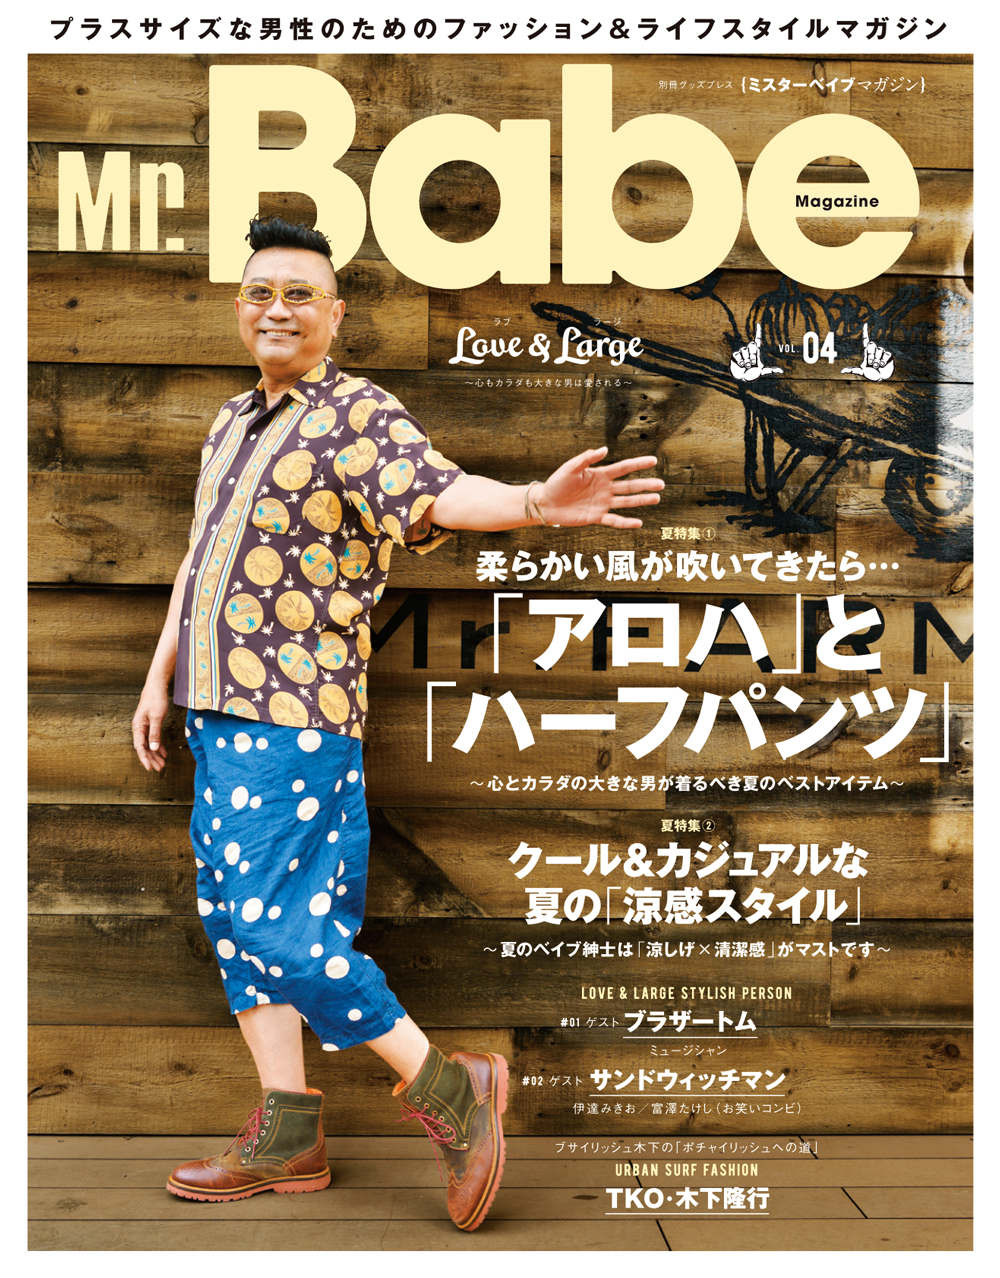 本日6 26 月 発売 ぽっちゃり男性のためのファッション ライフスタイルマガジン Mr Babe Magazine Vol 04 表紙は芸能界きってのオシャレ番長 ブラザートムさん 徳間書店のプレスリリース